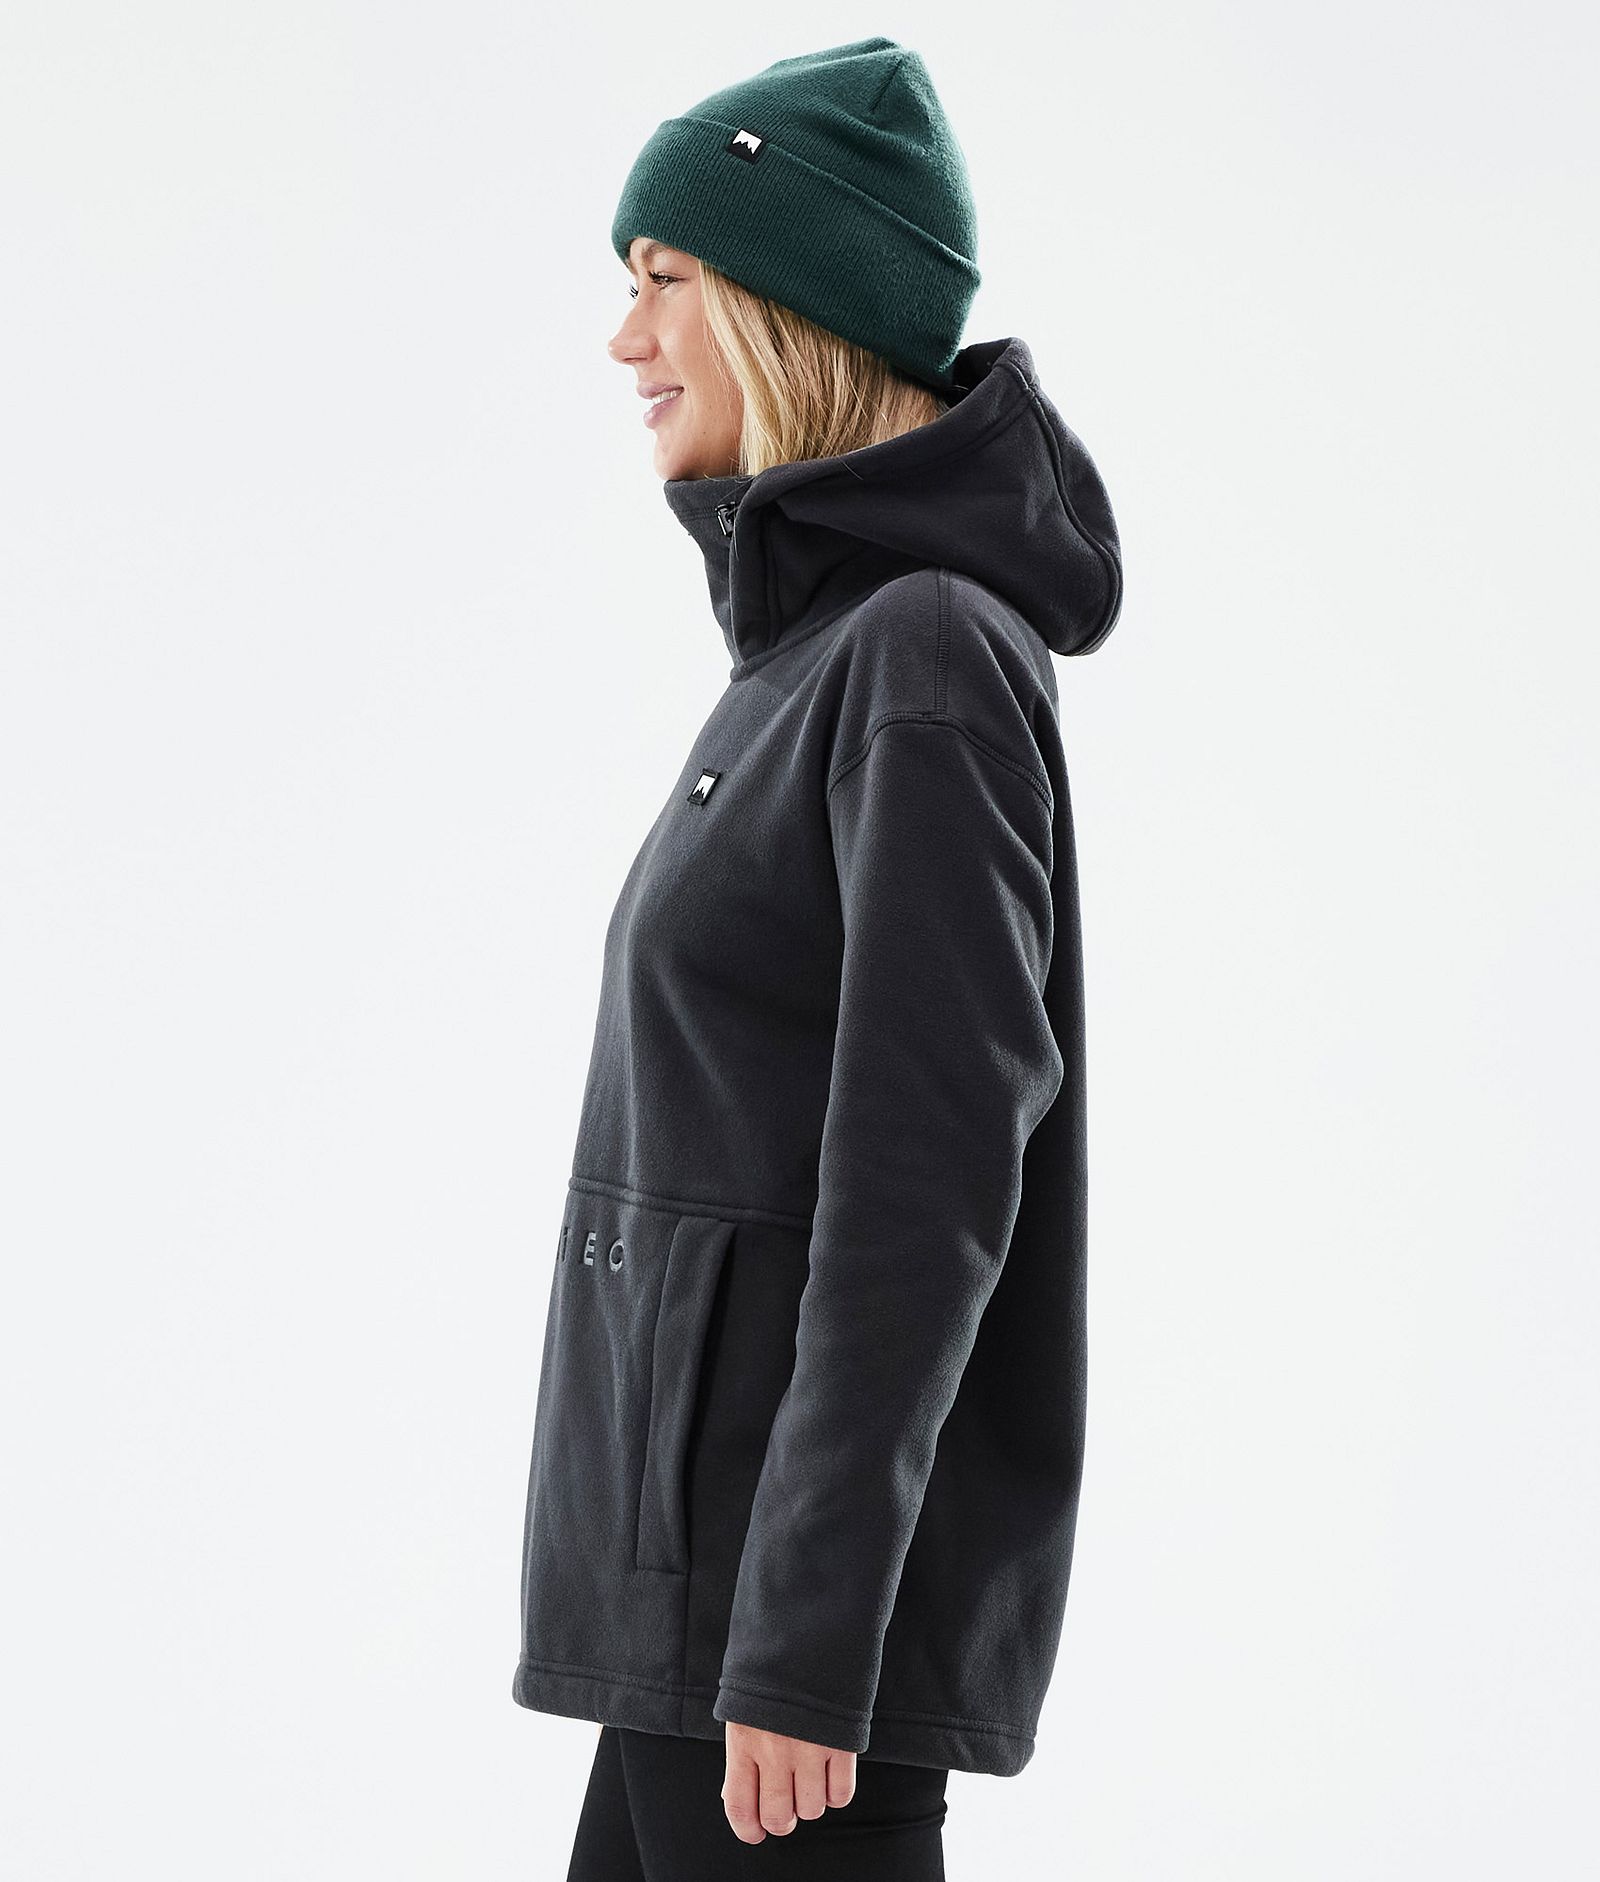 Montec Delta W Fleece-hoodie Dame Black